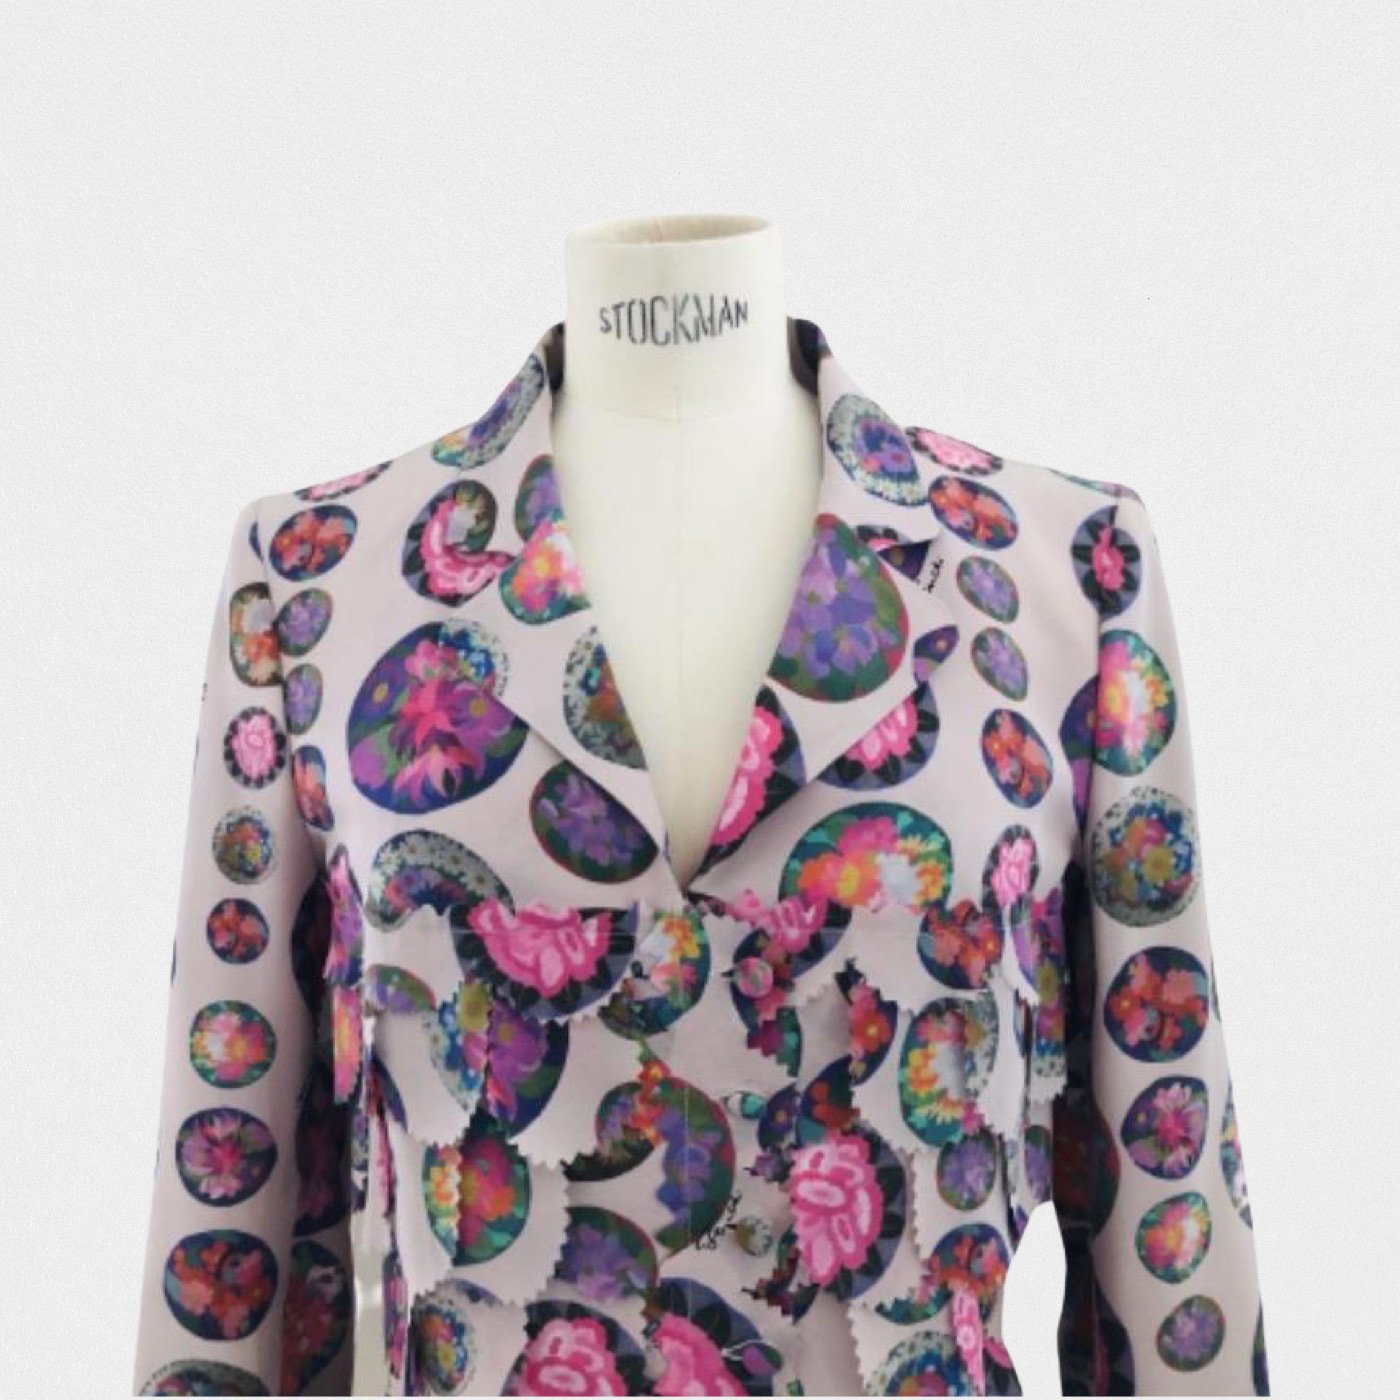 Lysis vintage Fendi petal shirt by Karl Lagerfeld - XS - 2000s